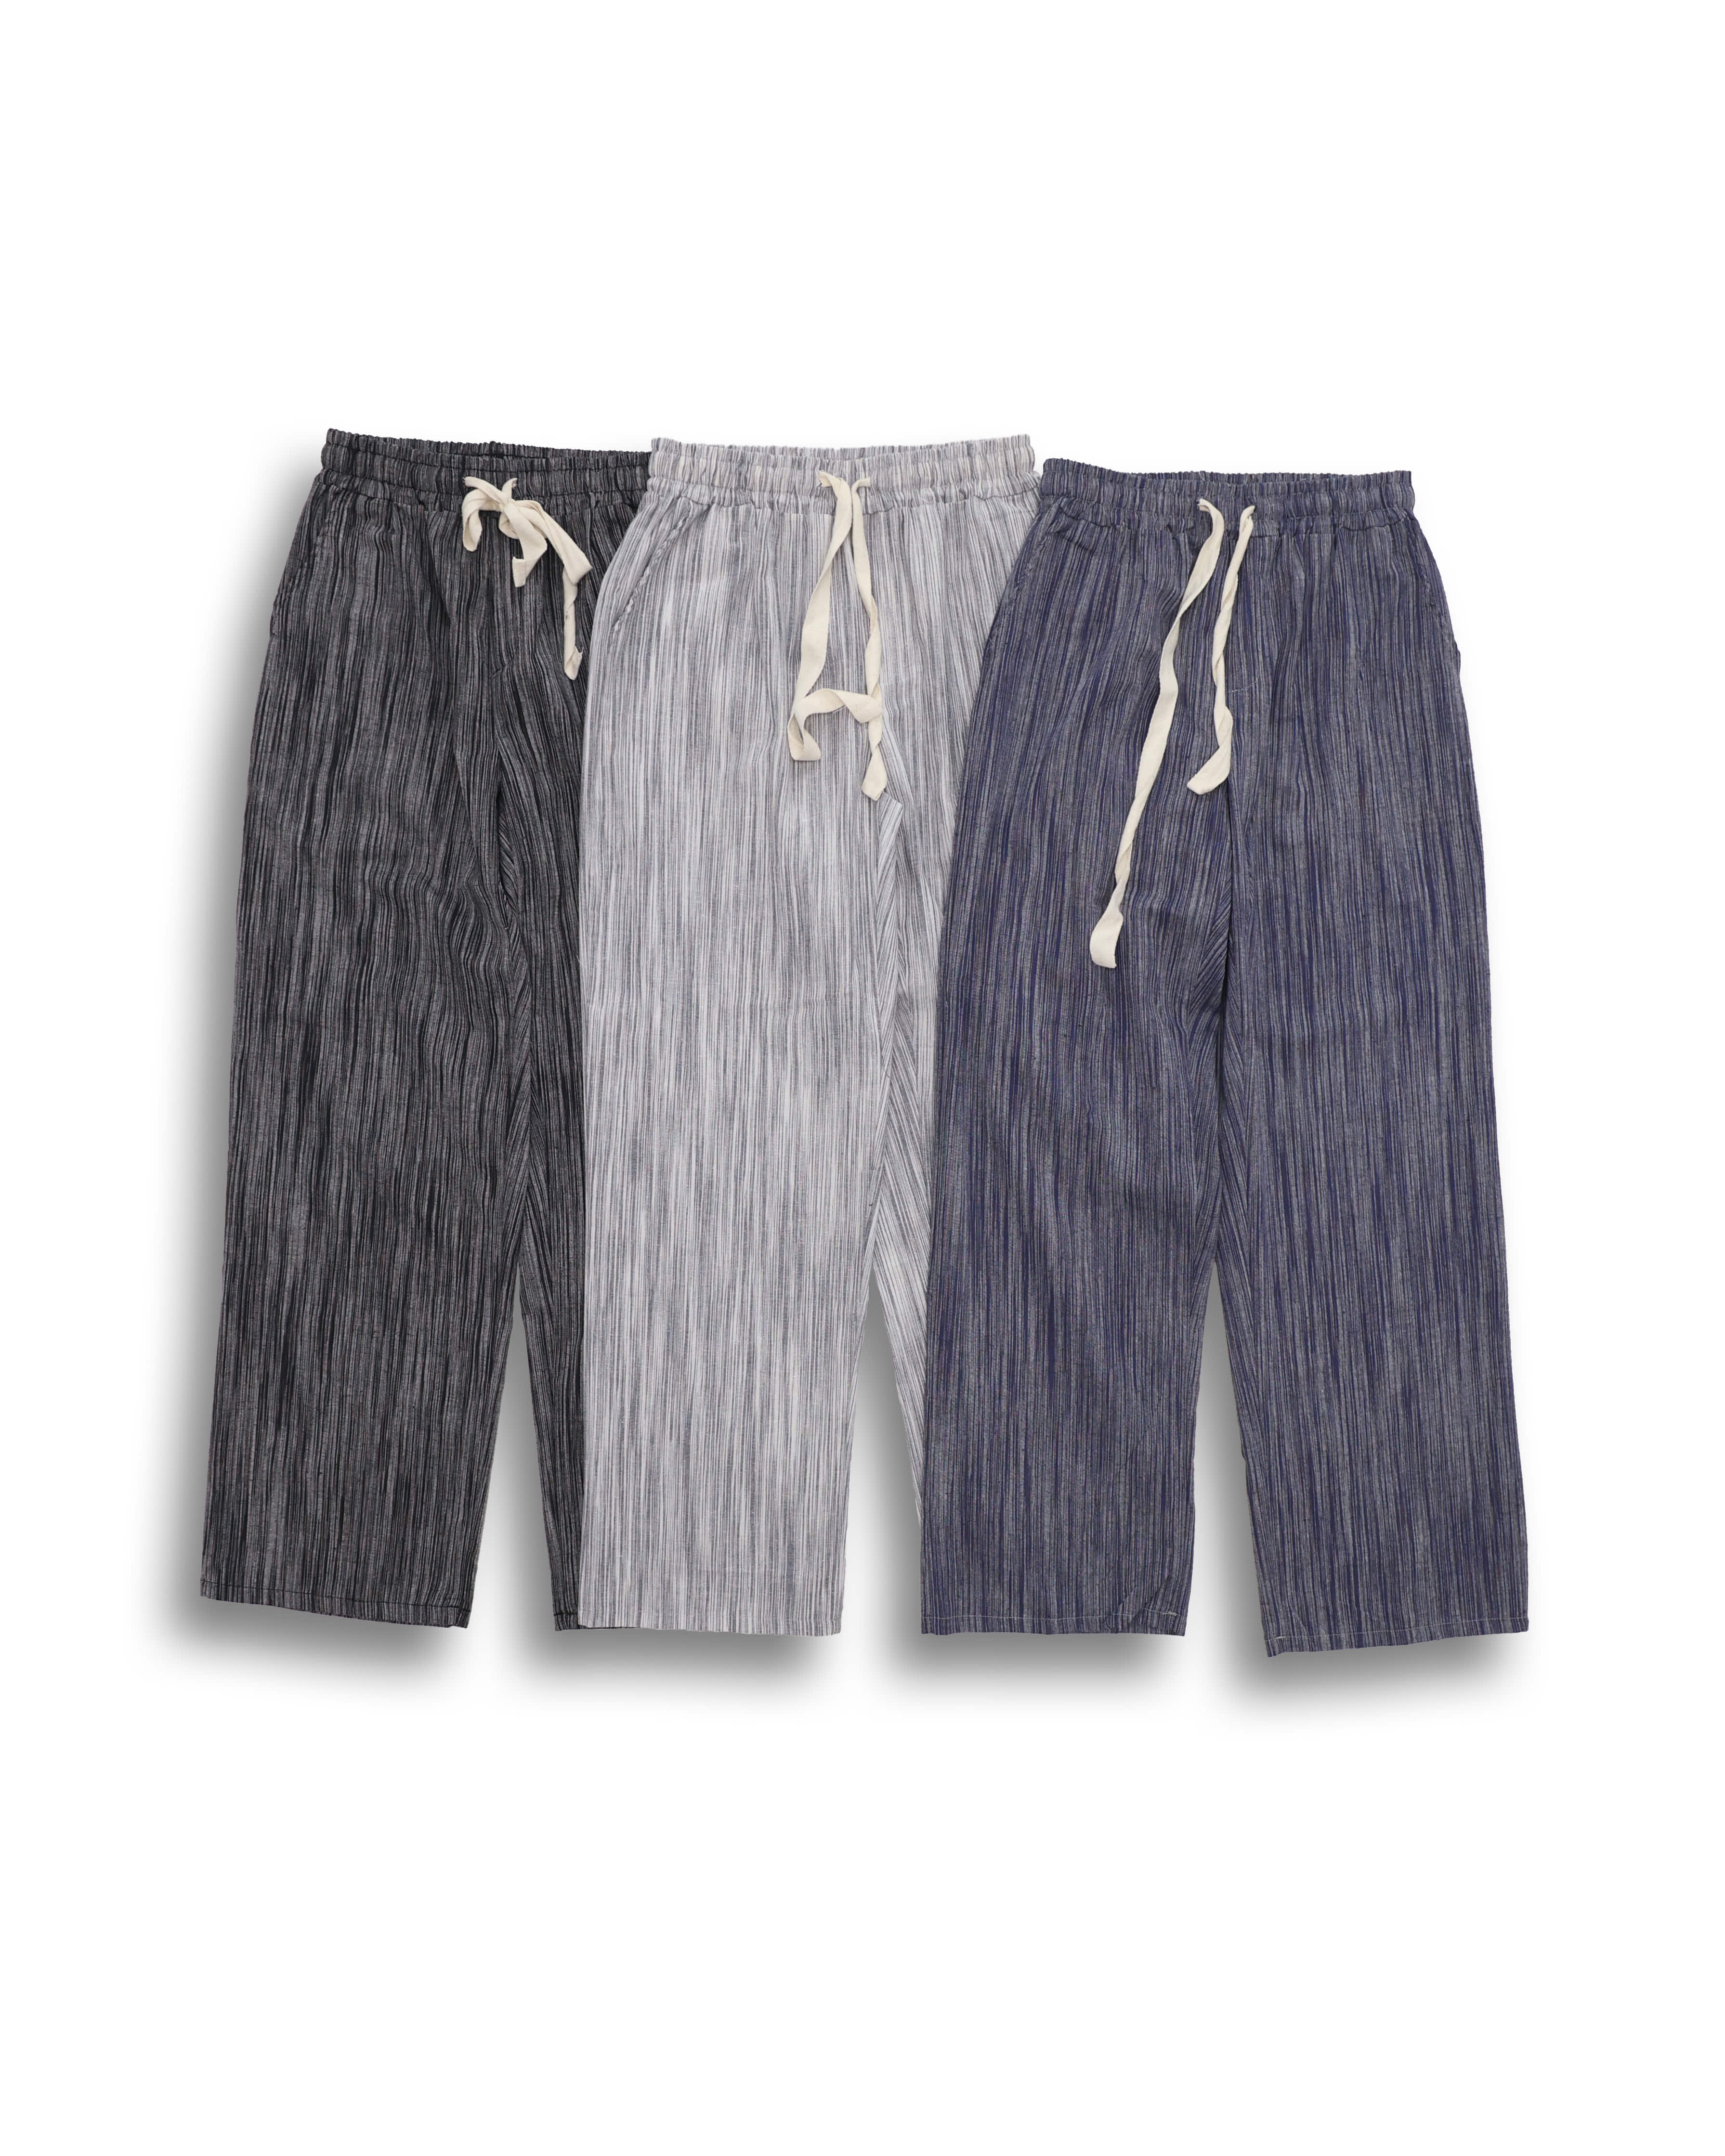 GROSS Linen Stripe Wide Pleats Pants (Black/Gray/Blue) - 7차 리오더 (5/13 배송예정)